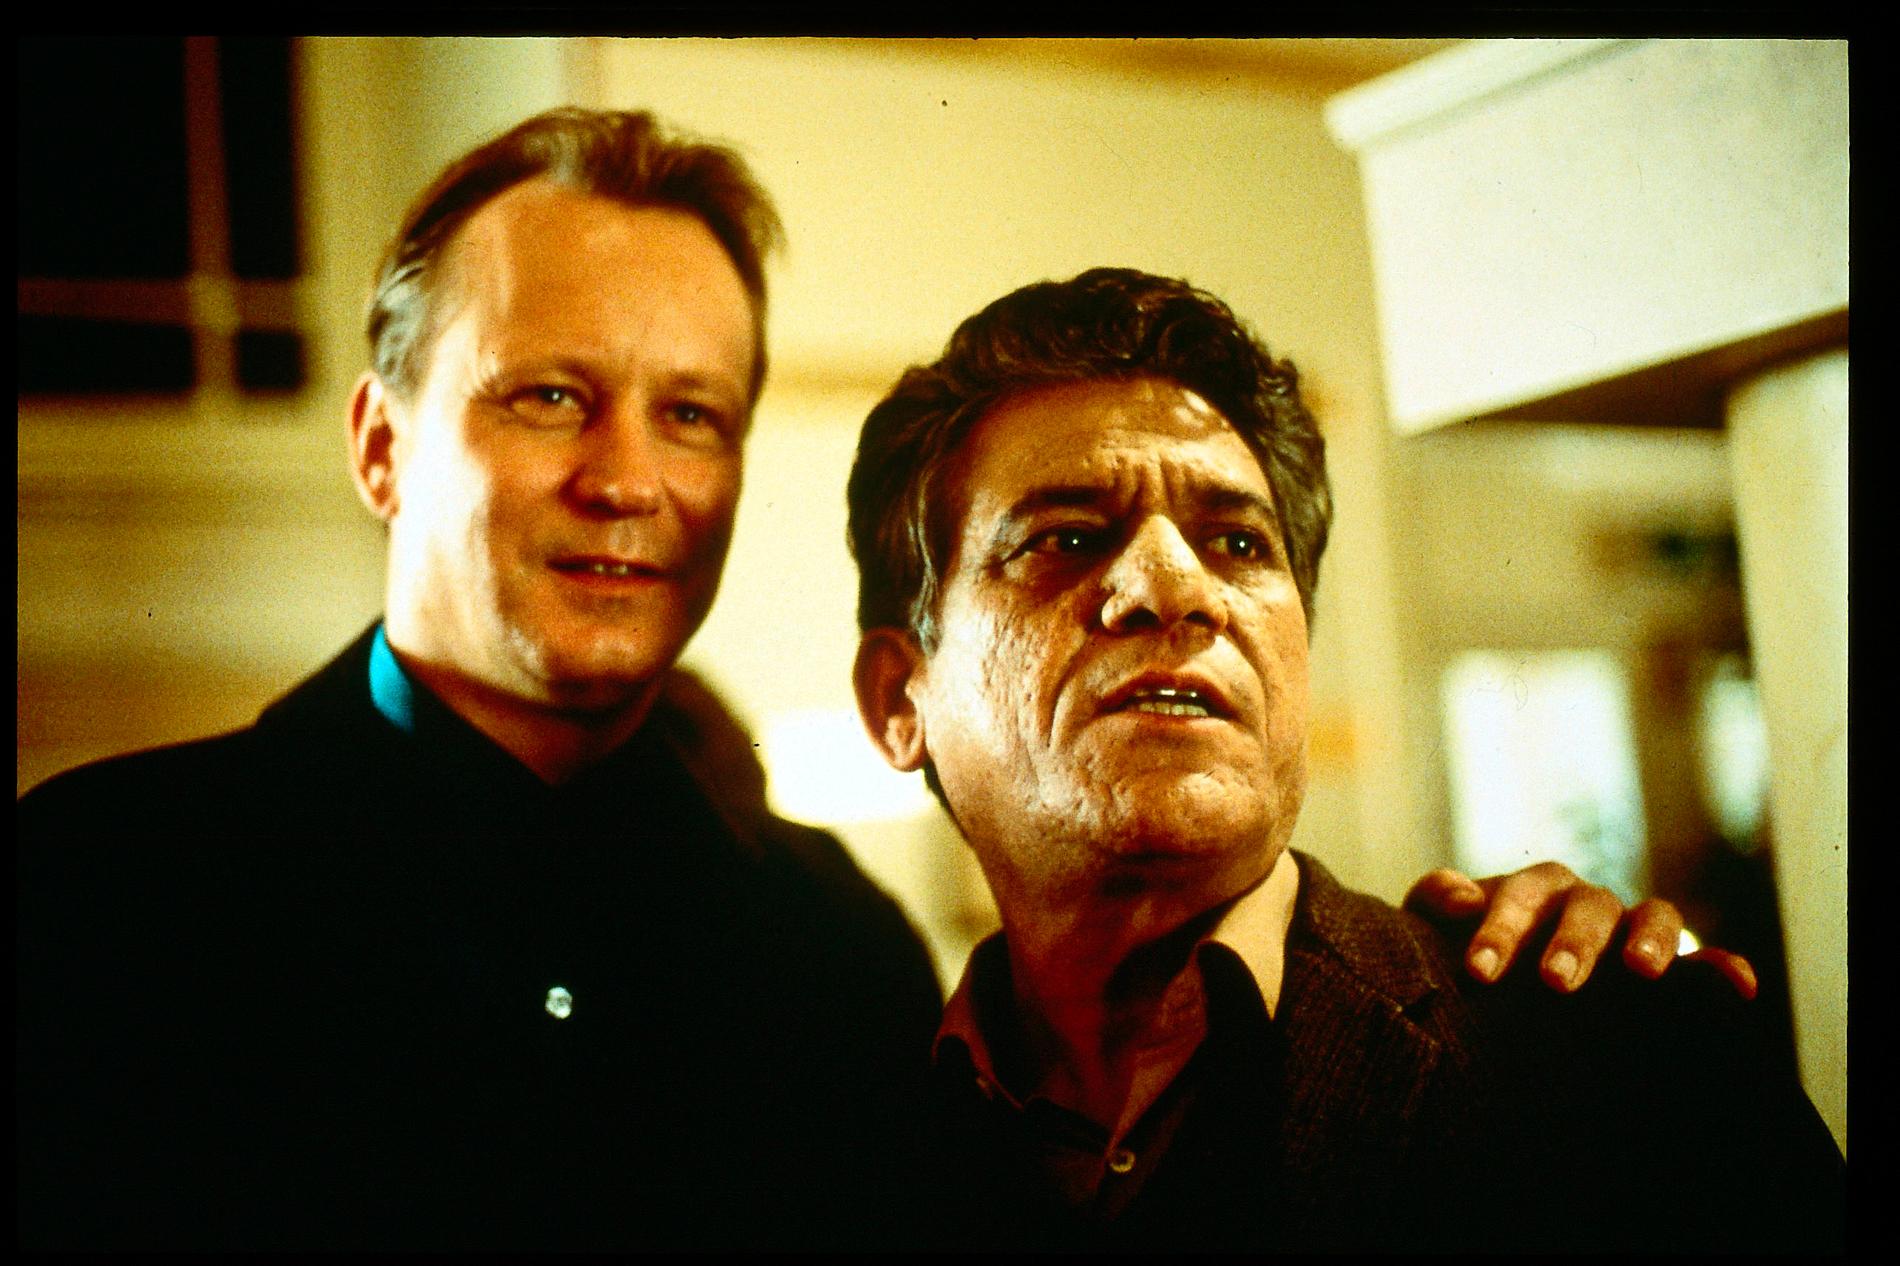 Om Puri tillsammans med Stellan Skarsgård i filmen ”My son the fanatic” 1997.